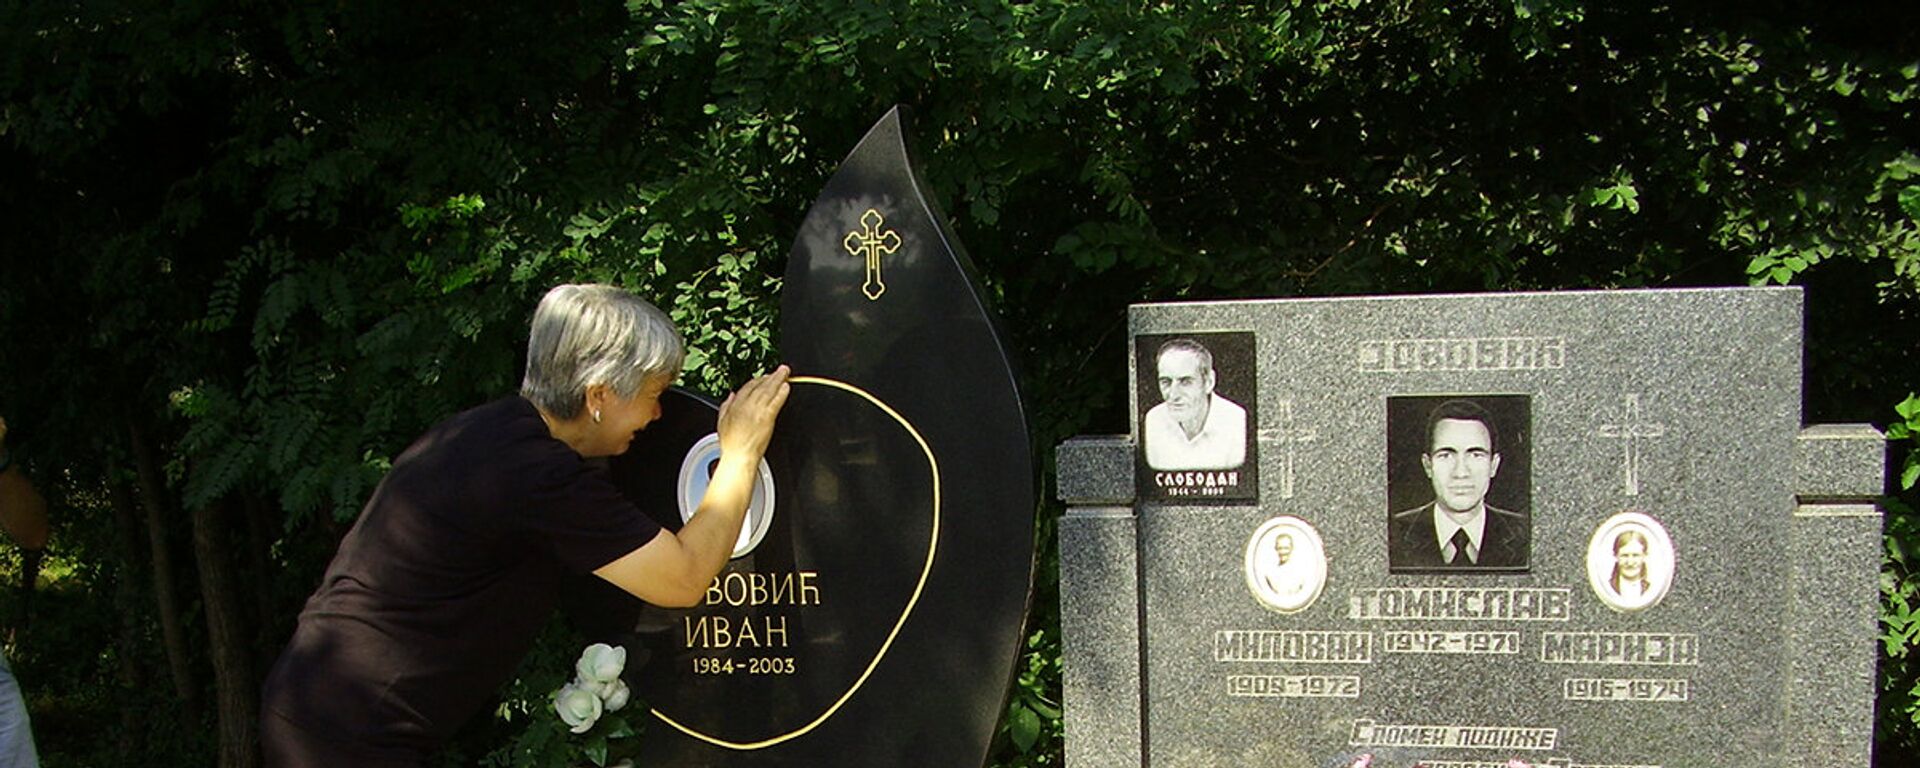 Majka Ivana Jovovića na grobu svog sina u Goraždevcu. - Sputnik Srbija, 1920, 13.08.2021